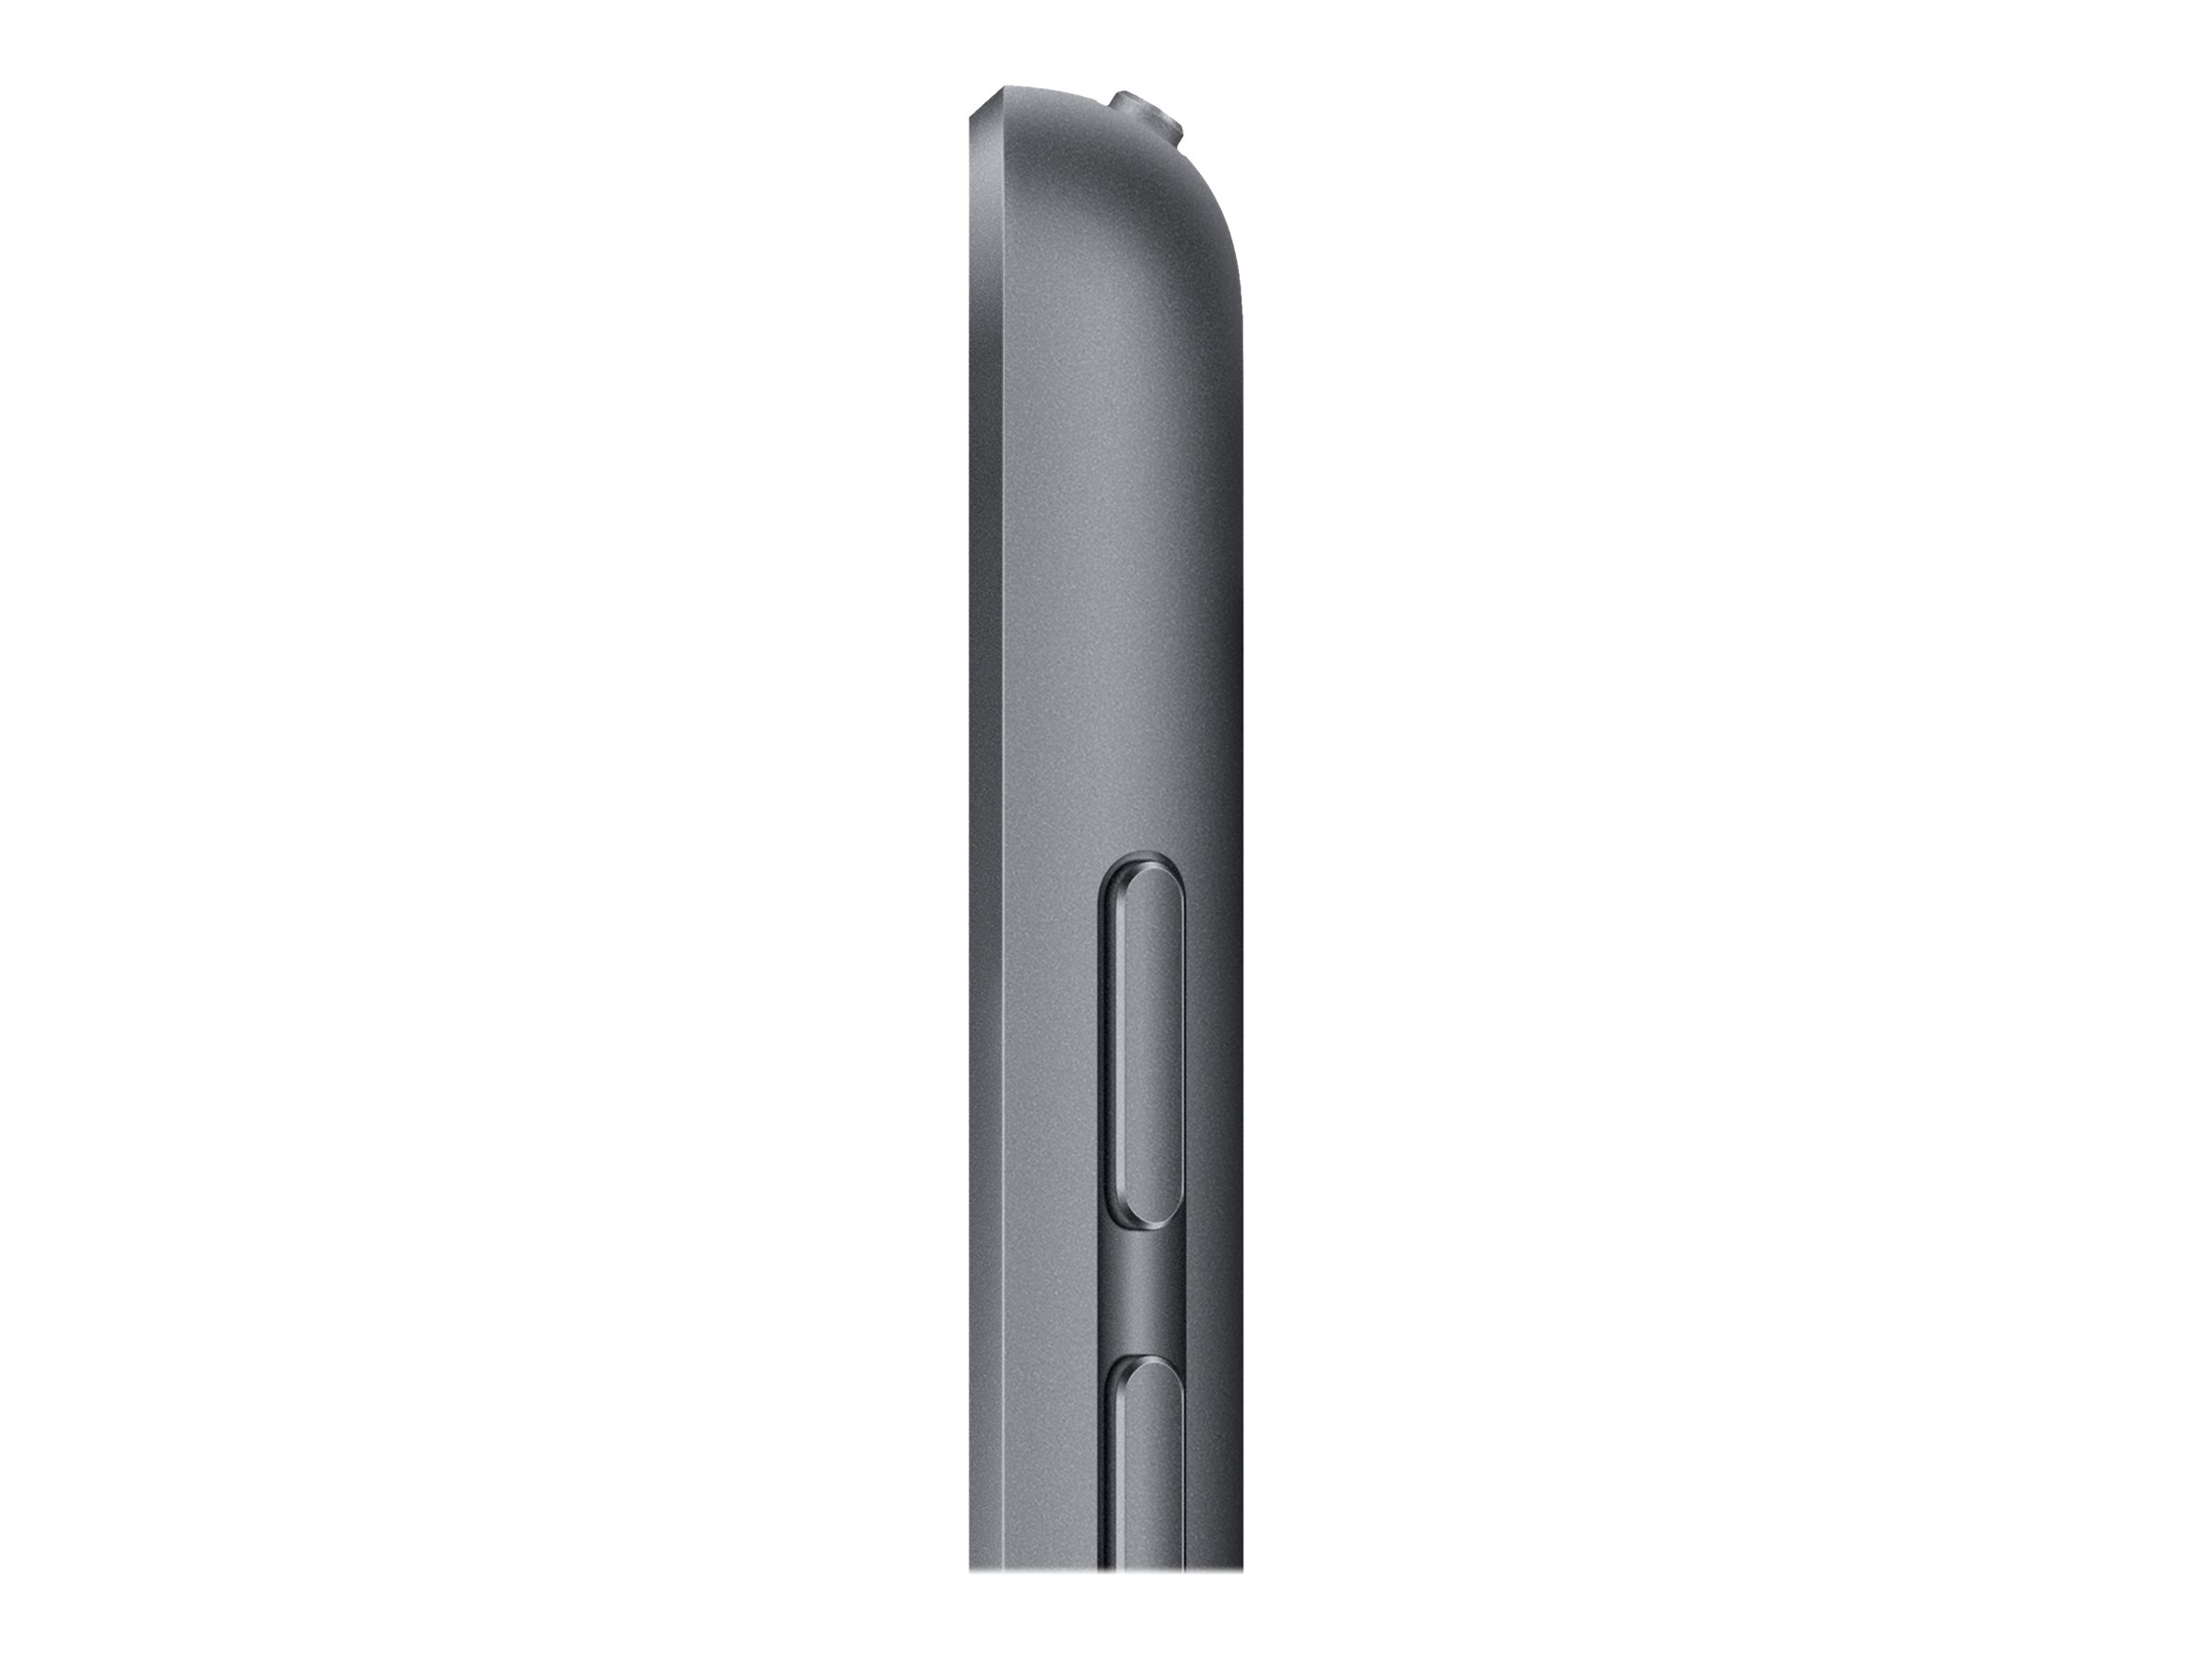 Apple 10.2-inch iPad Wi-Fi + Cellular - 9. Generation - Tablet - 64 GB - 25.9 cm (10.2")